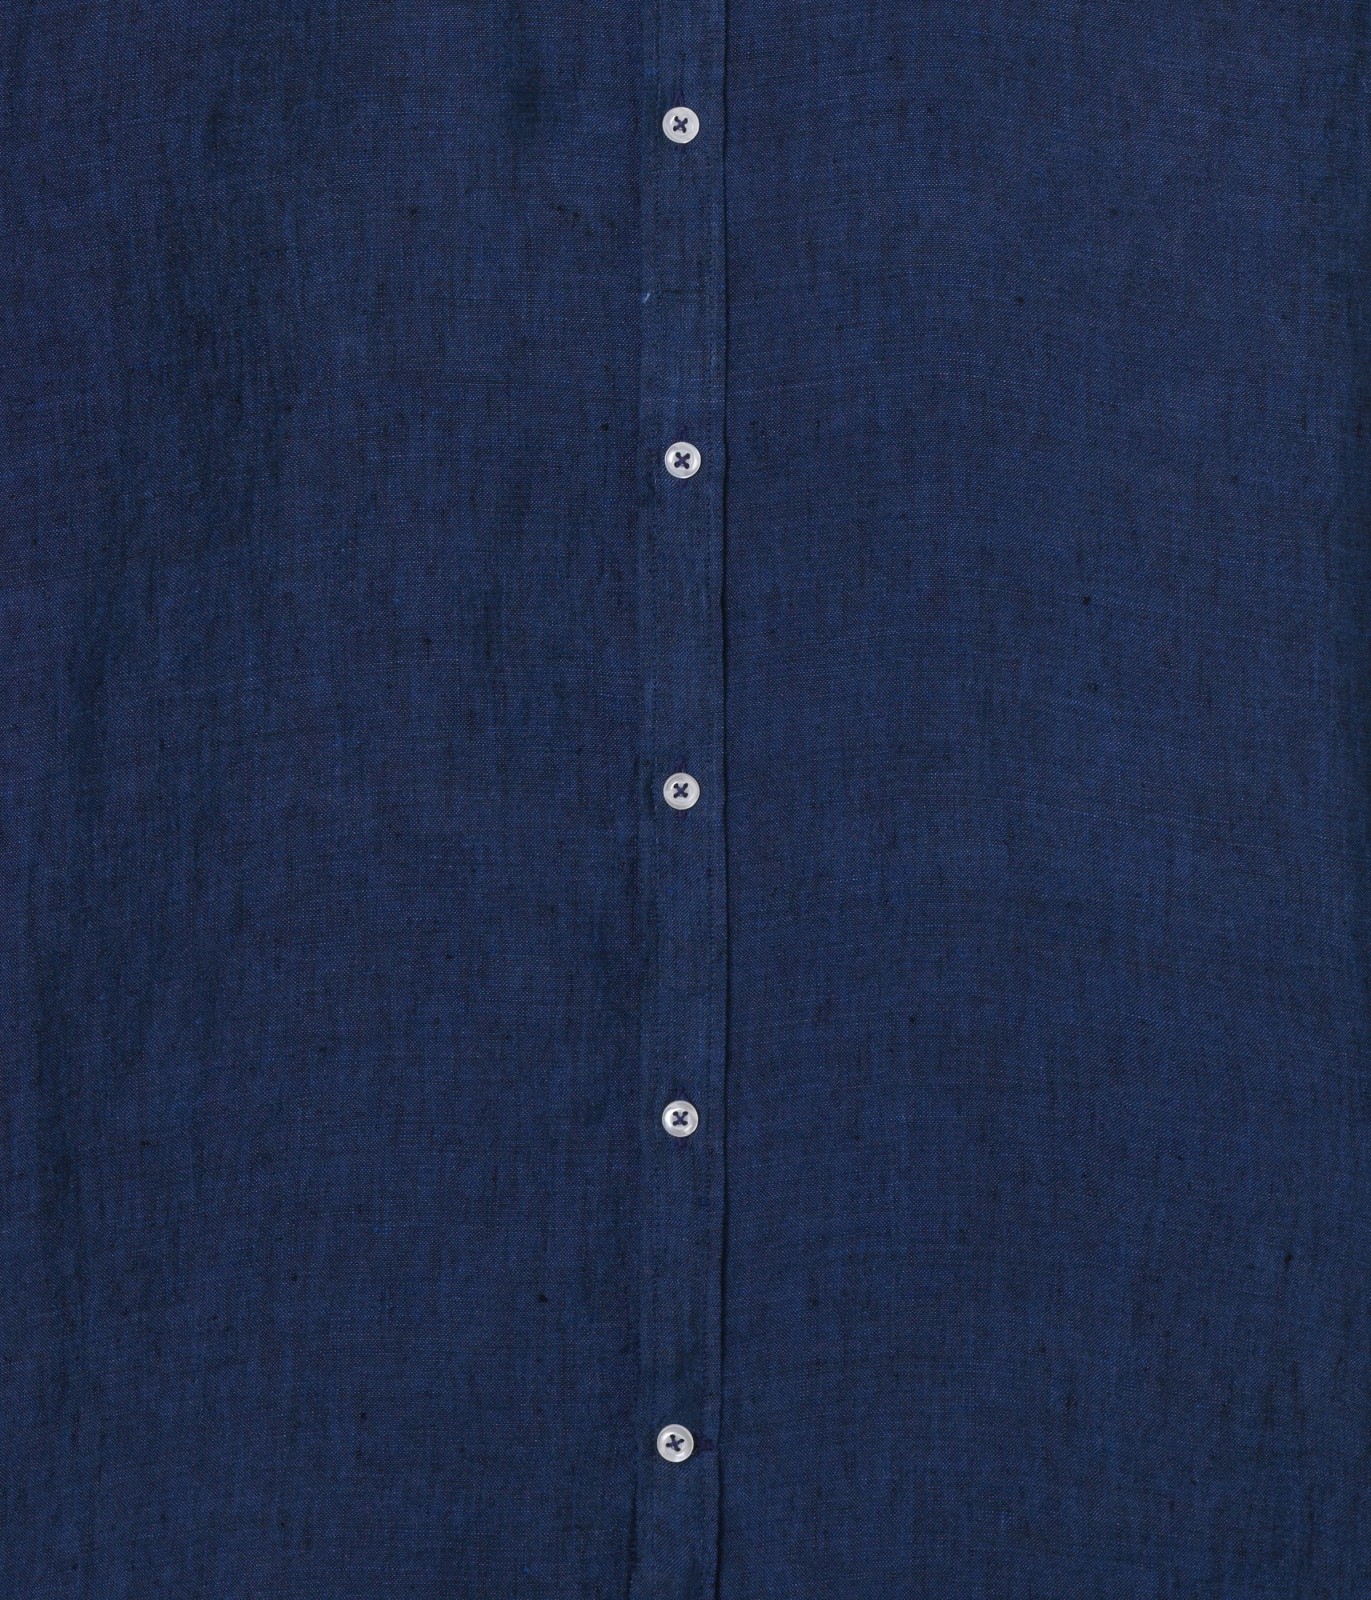 Plain navy blue color long sleeves shirt for men | Quality brand Europann